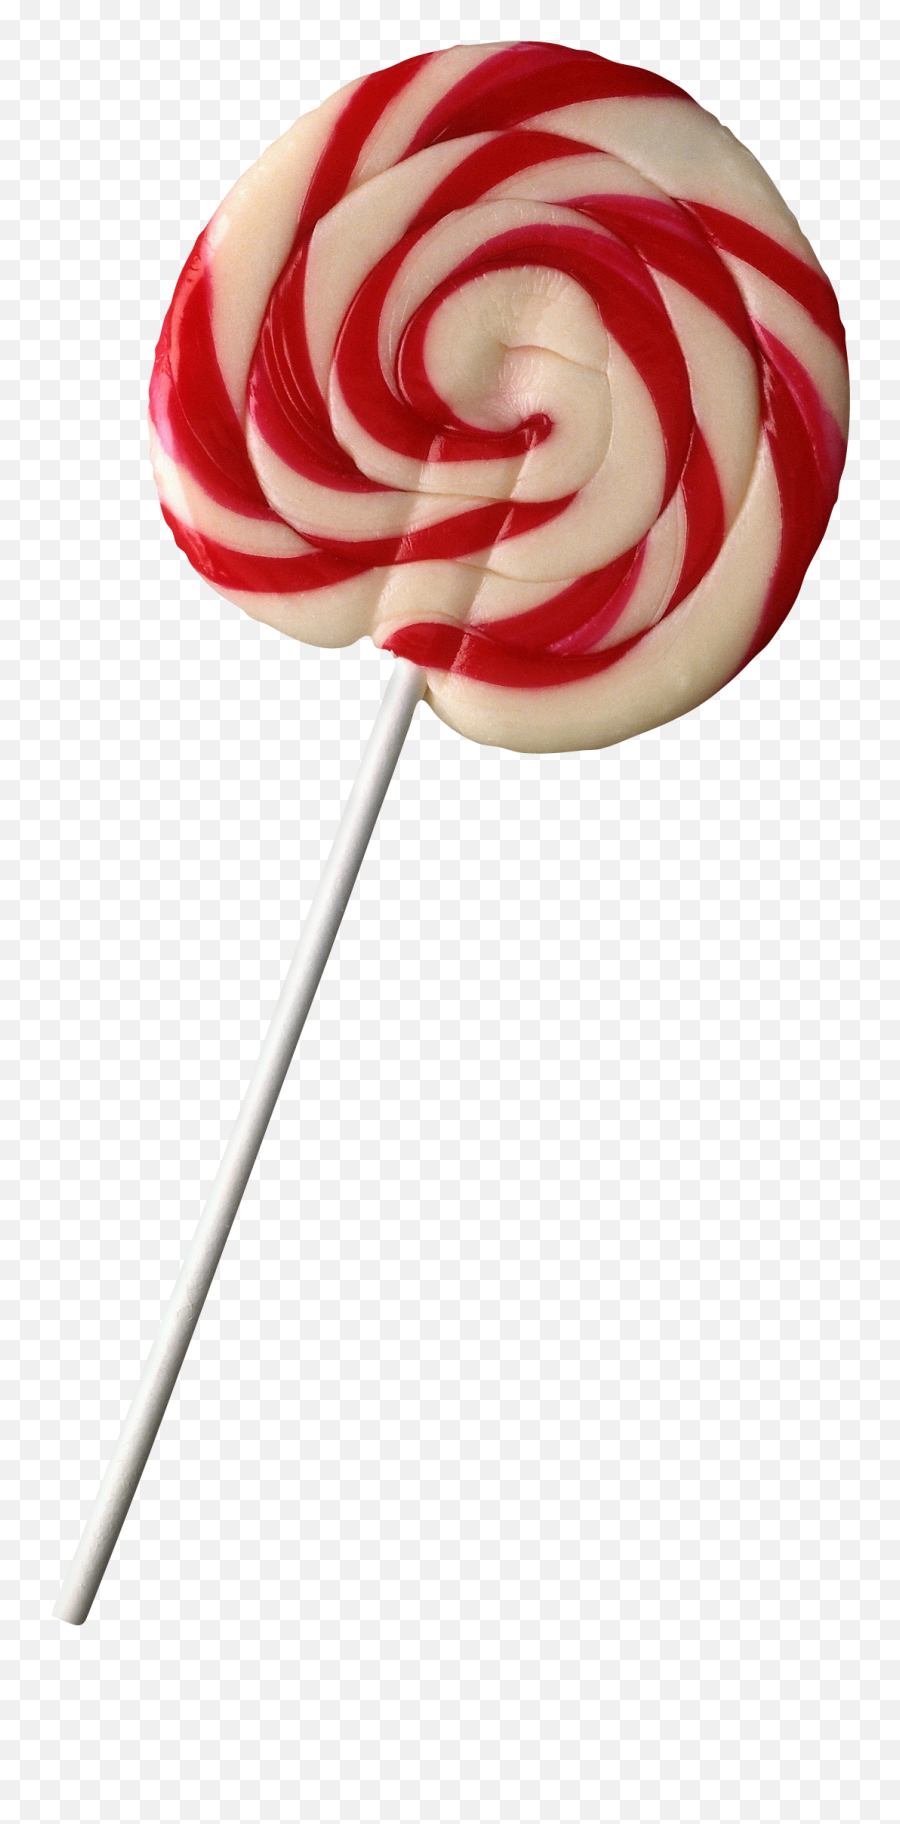 Lollipop Png Image Without Background - Lollipop Png Aesthetic,Lollipop Transparent